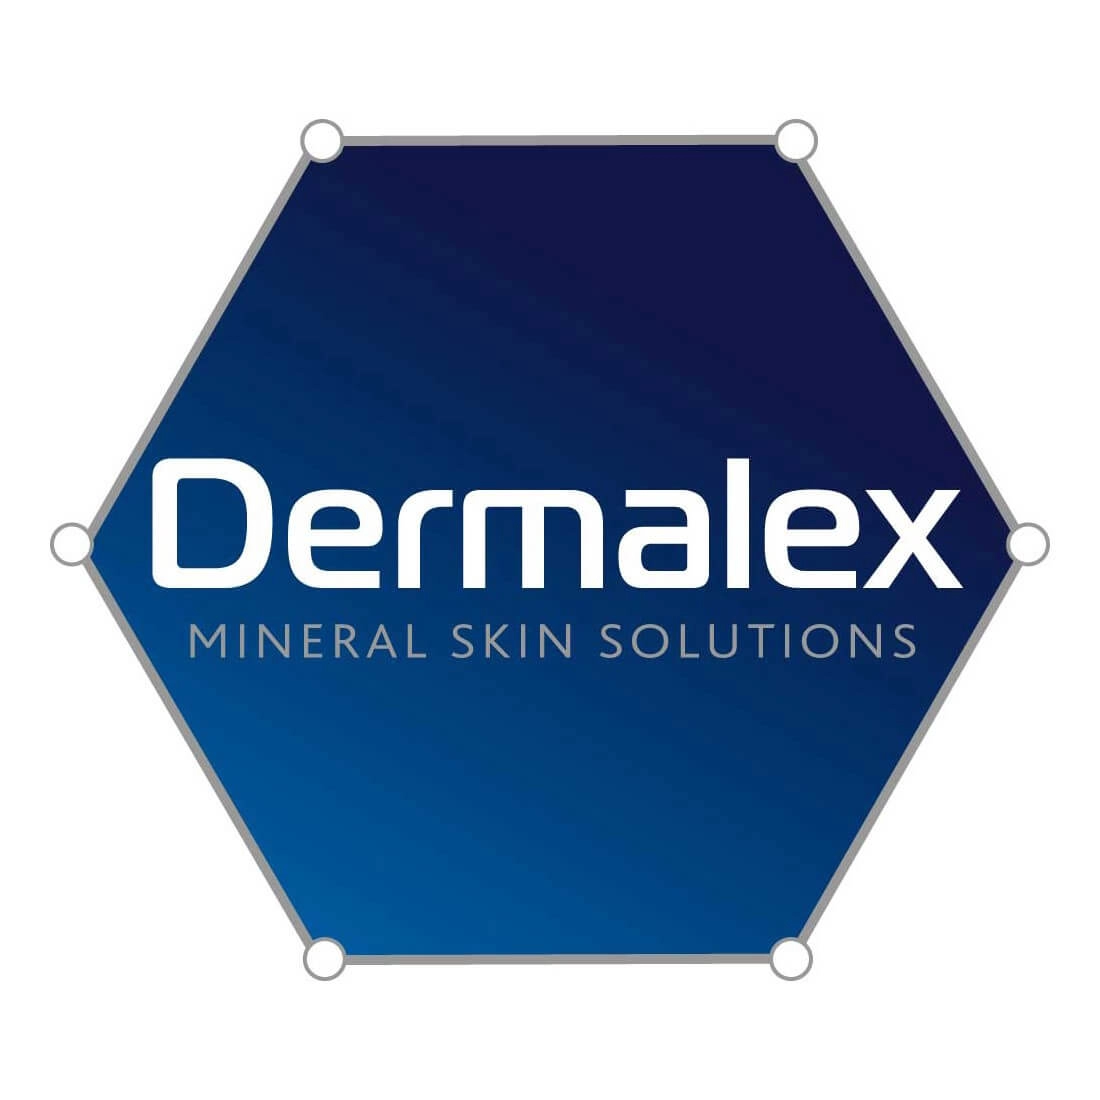 Dermalex logo